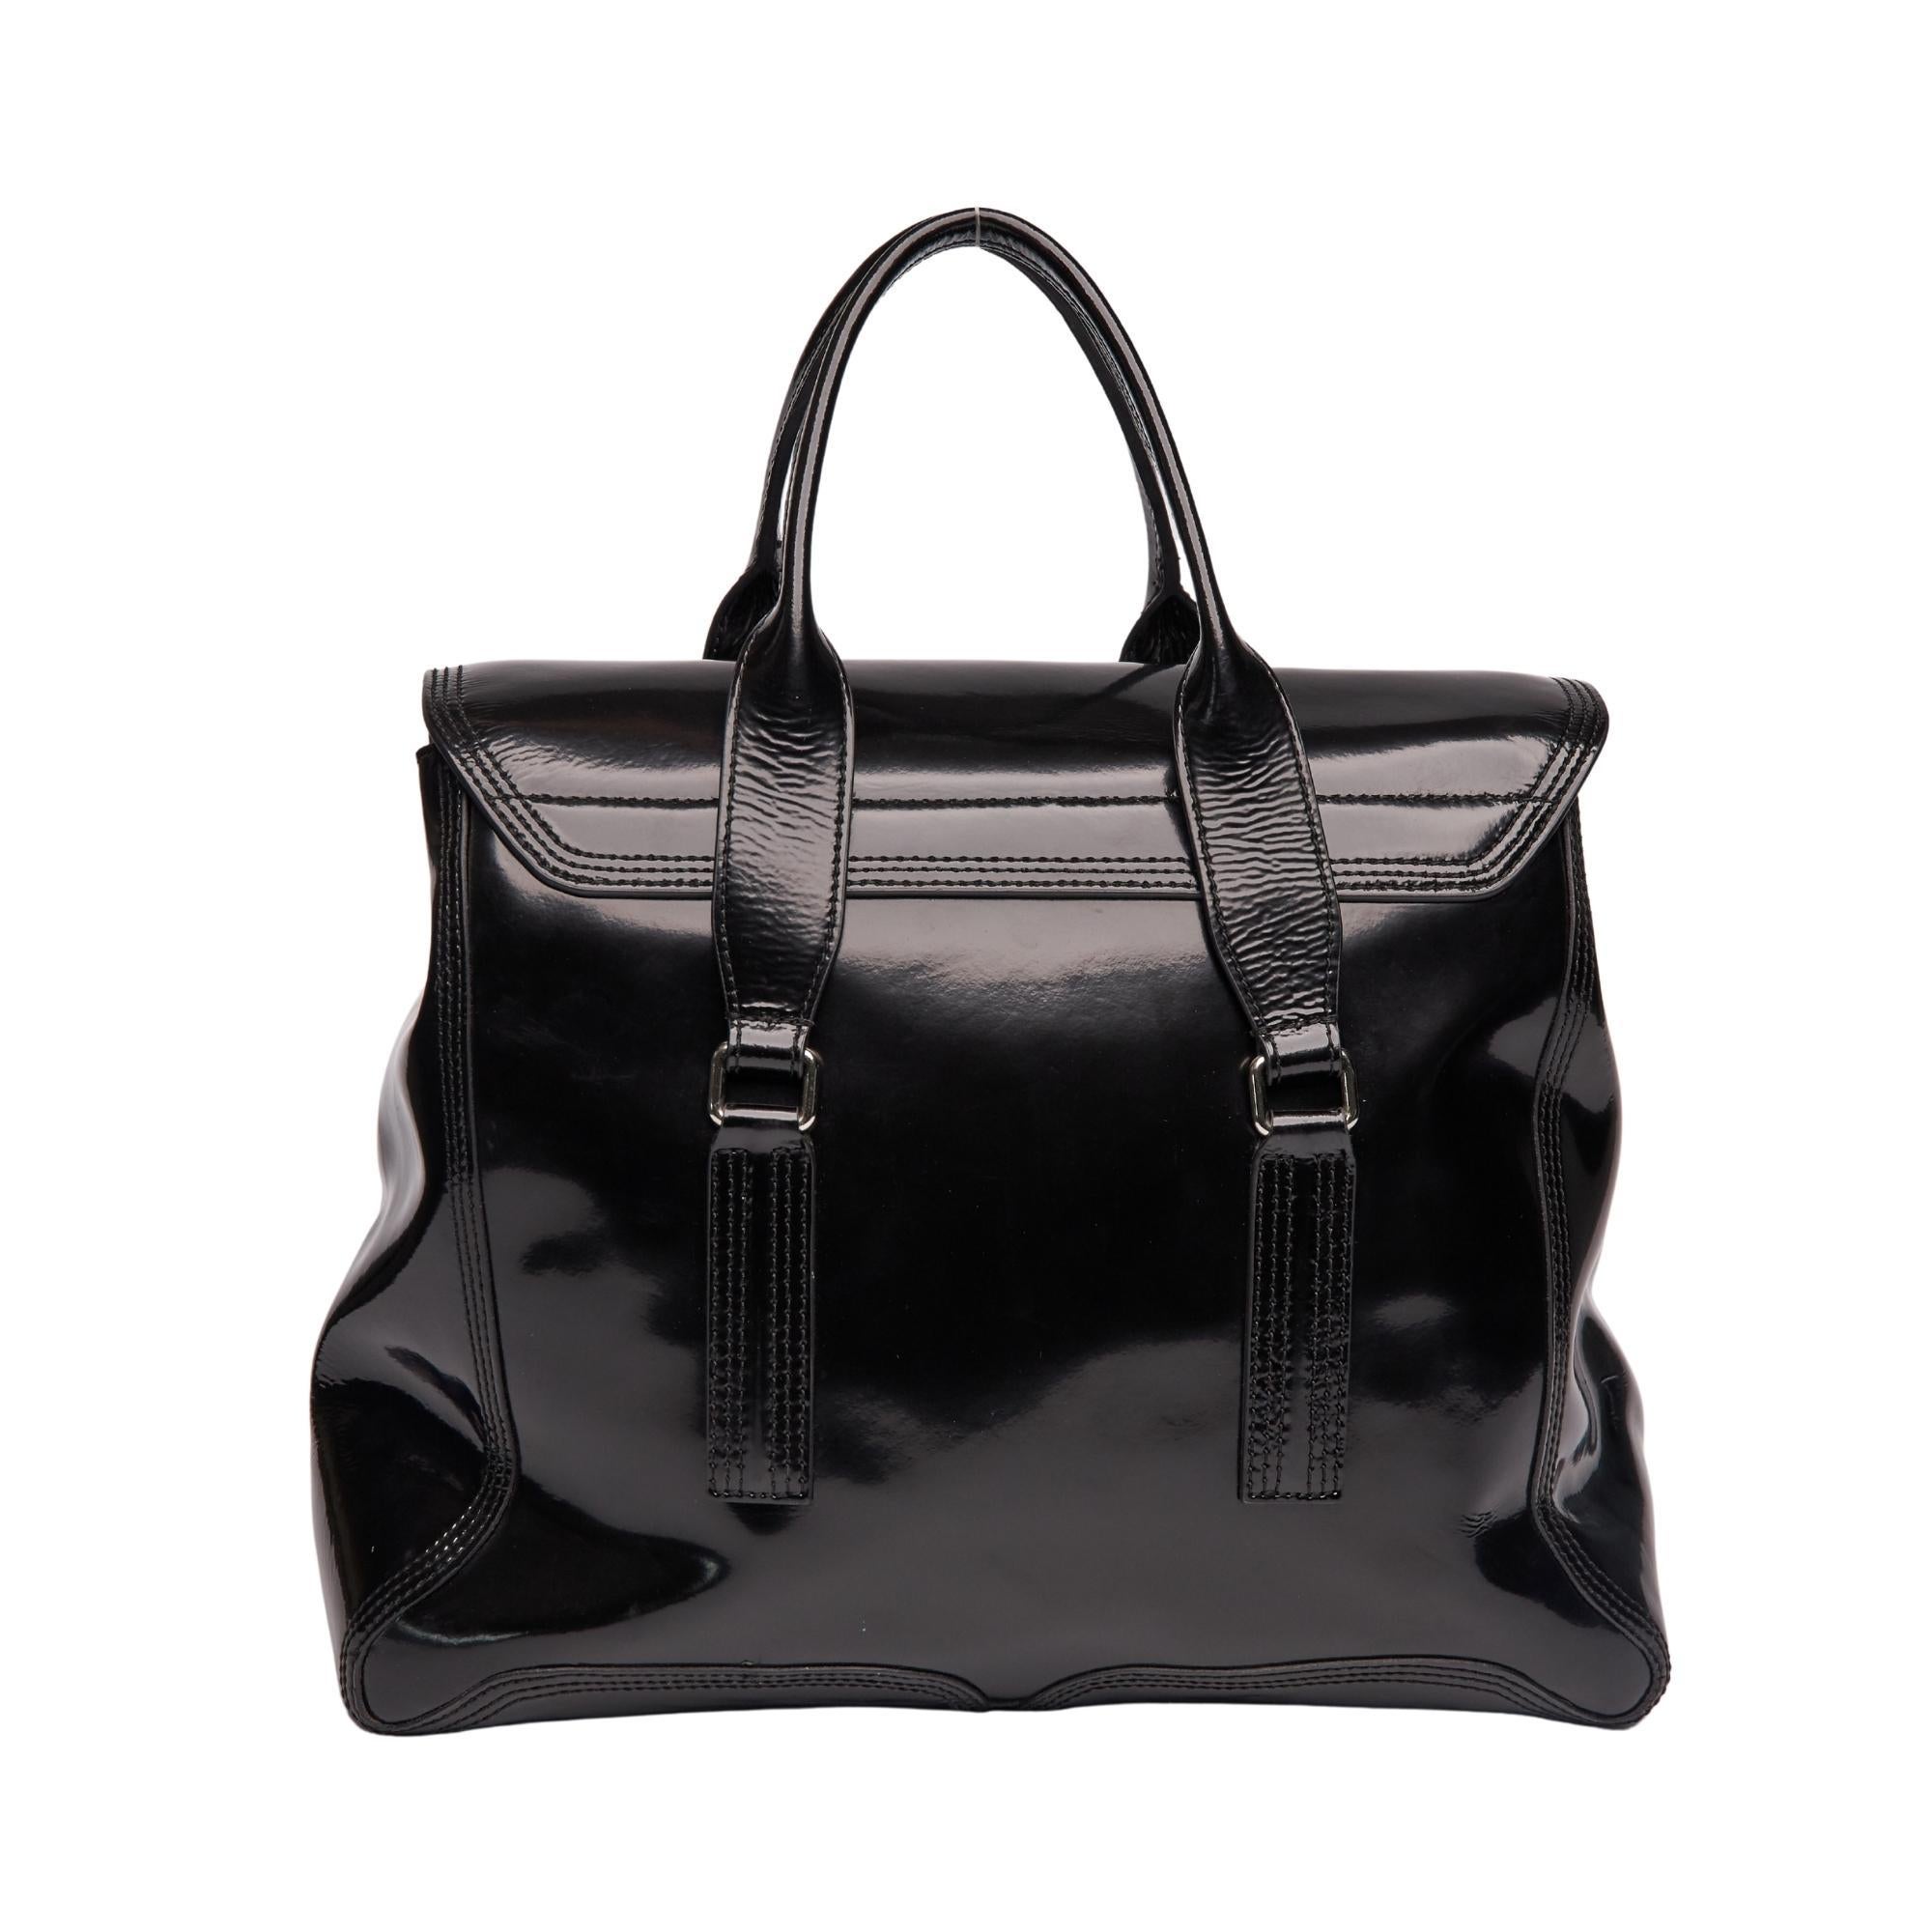 Diese Handtasche ist aus schillerndem schwarzem Lackleder gefertigt. Die Tasche verfügt über zwei flache Lederhenkel mit silbernen Gliedern, vertikale Reißverschlussfalten, Seitenwände aus schwarzem Leder und eine überkreuzte Klappe mit silbernem